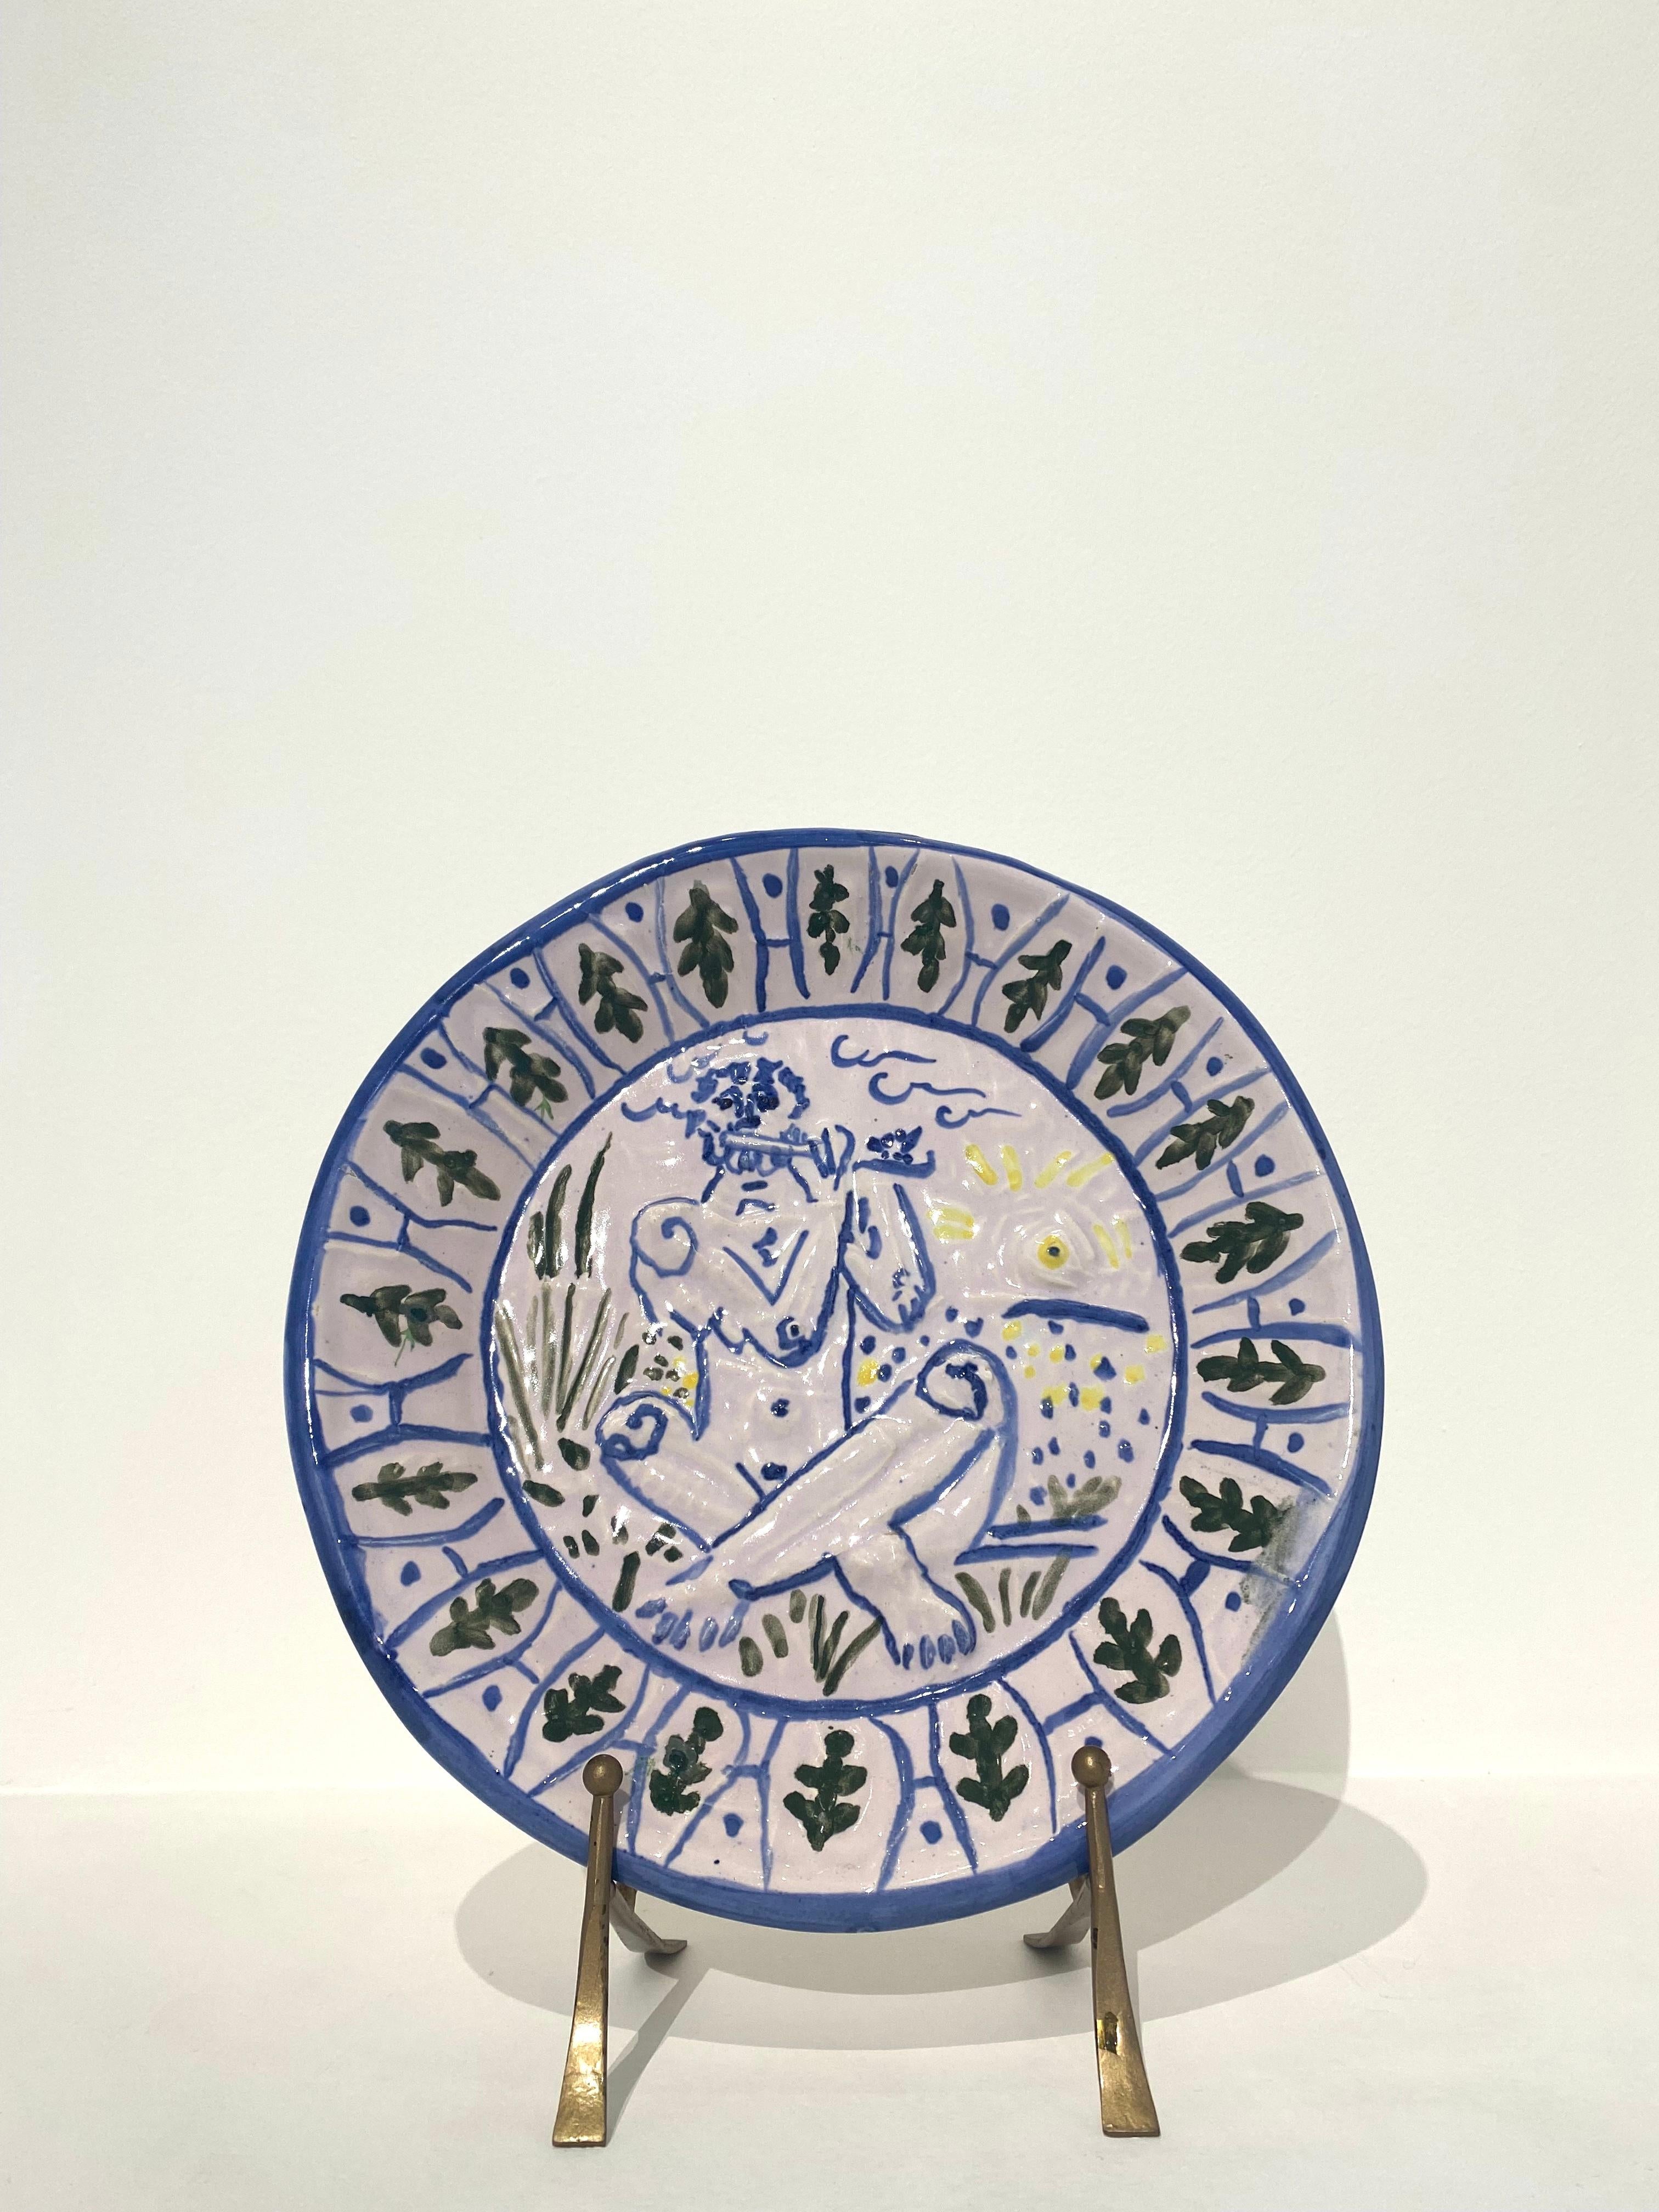 Pablo Picasso Figurative Sculpture - Joueur de flûte, Picasso, Plate, Music, Myths, Plate, Design, Ceramic, 1950's